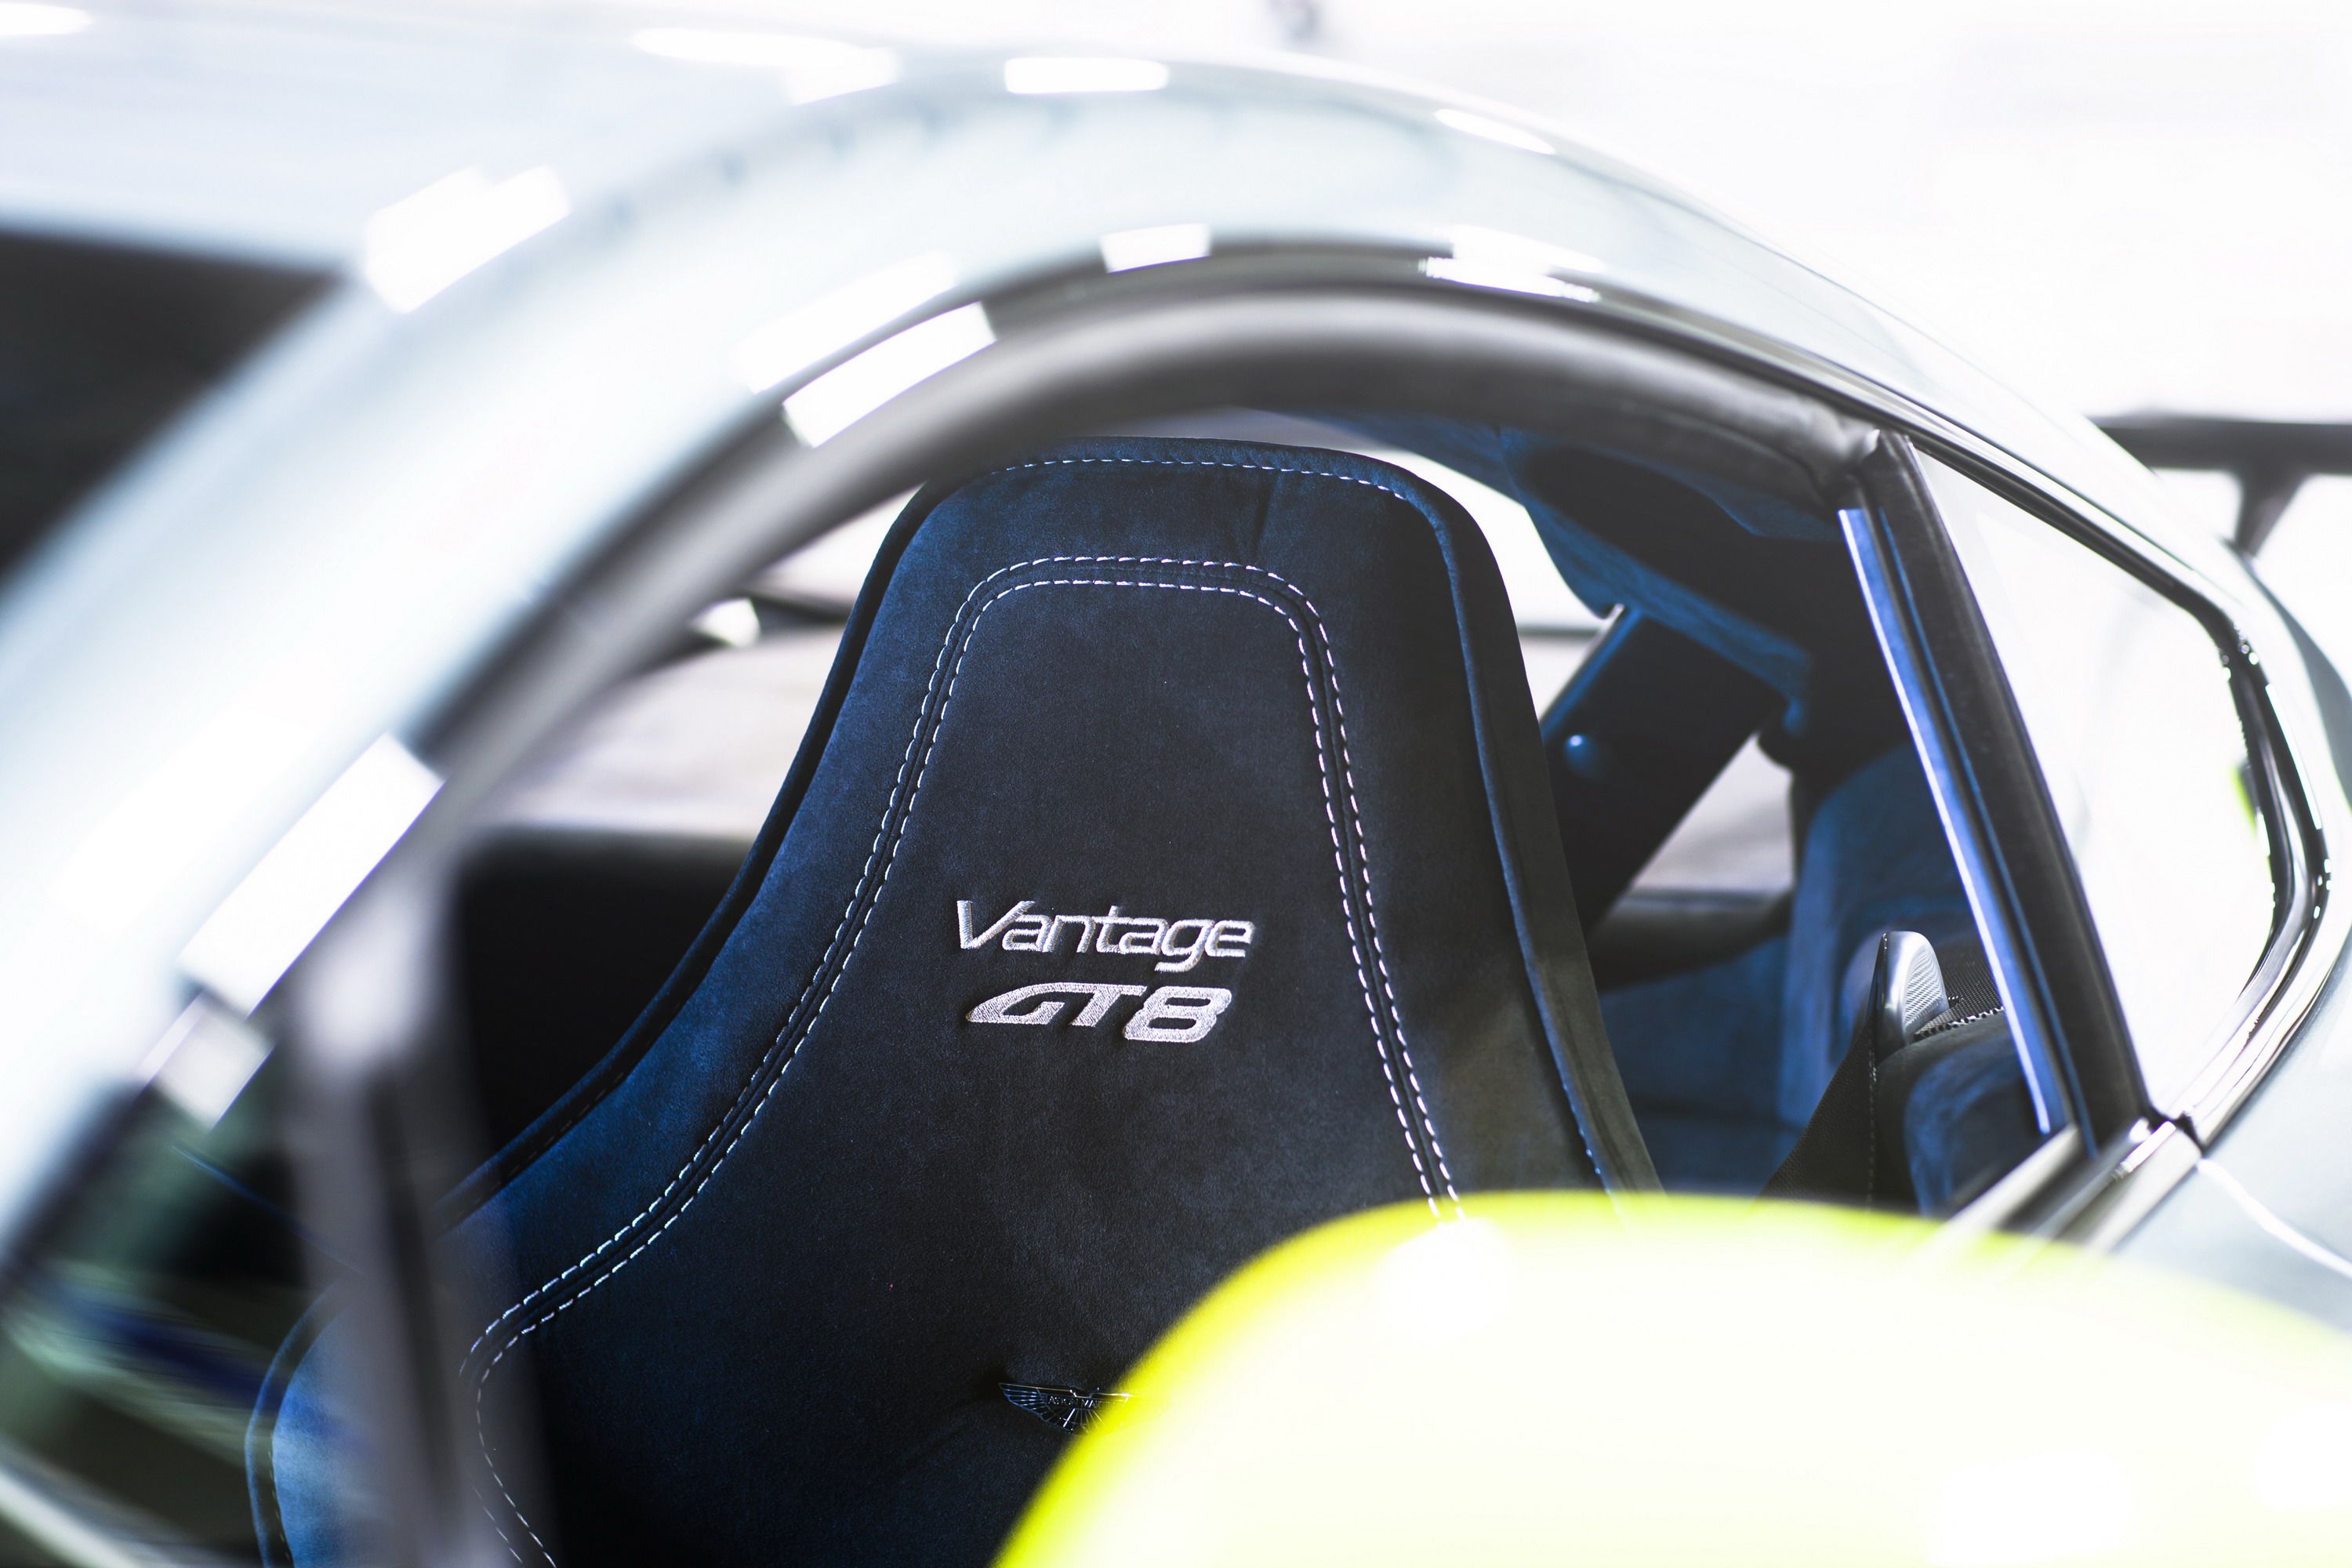 2017 Aston Martin Vantage GT8